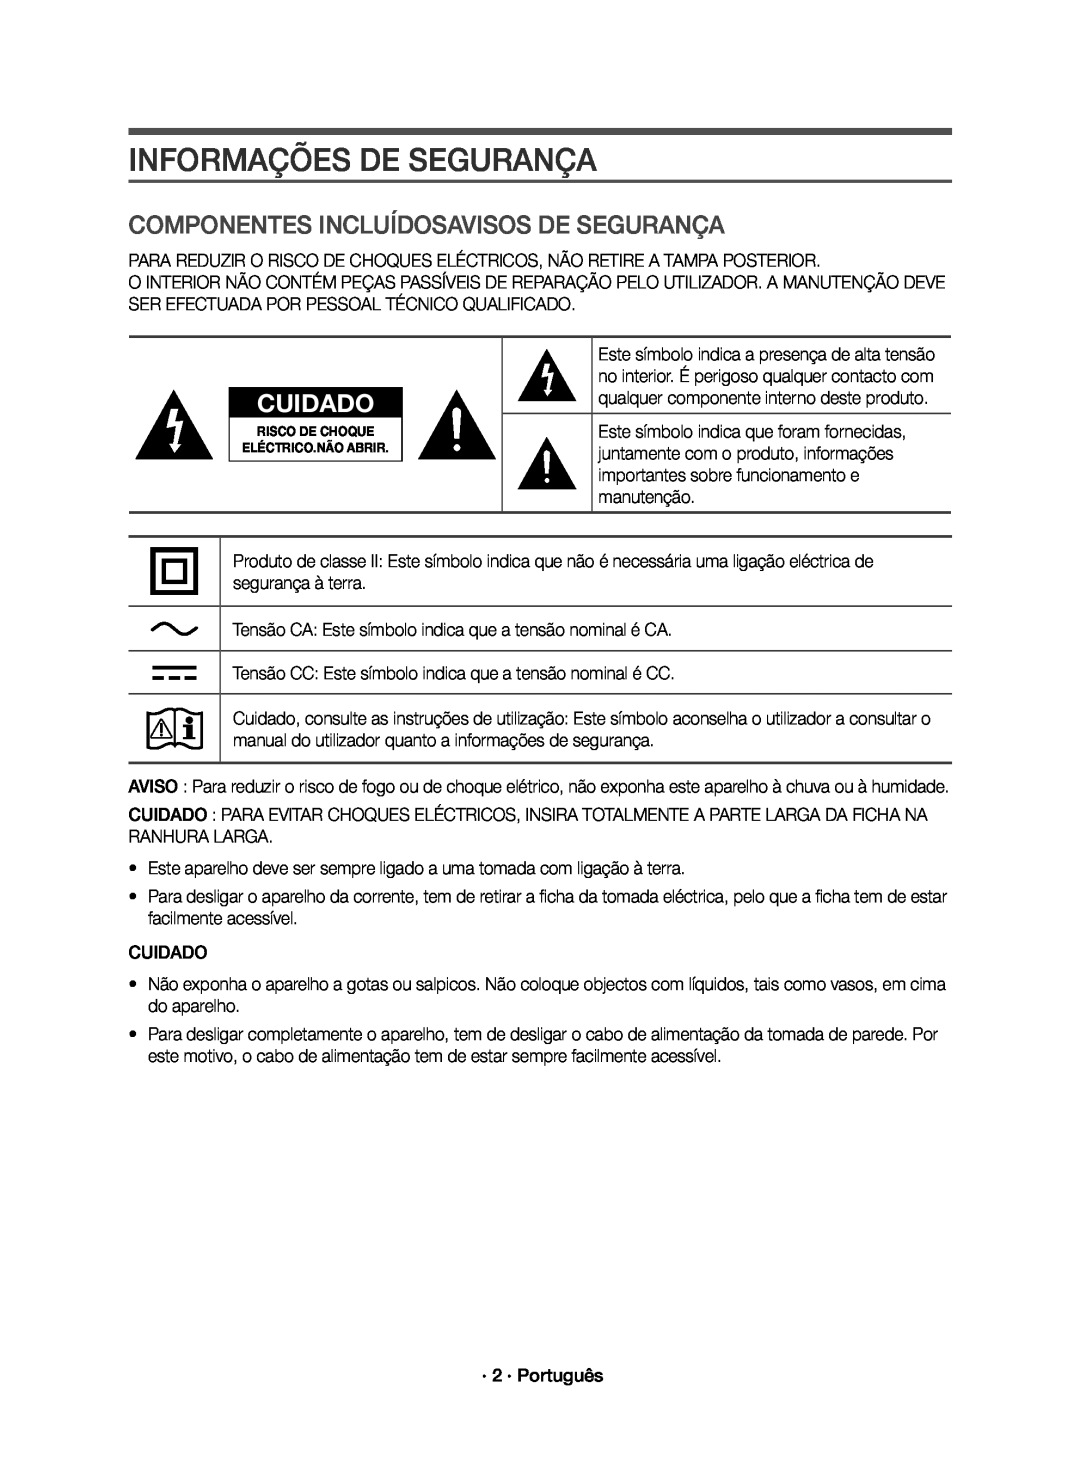 Samsung HW-K651/ZF, HW-K650/ZF manual Informações De Segurança, Componentes Incluídosavisos De Segurança, Cuidado 